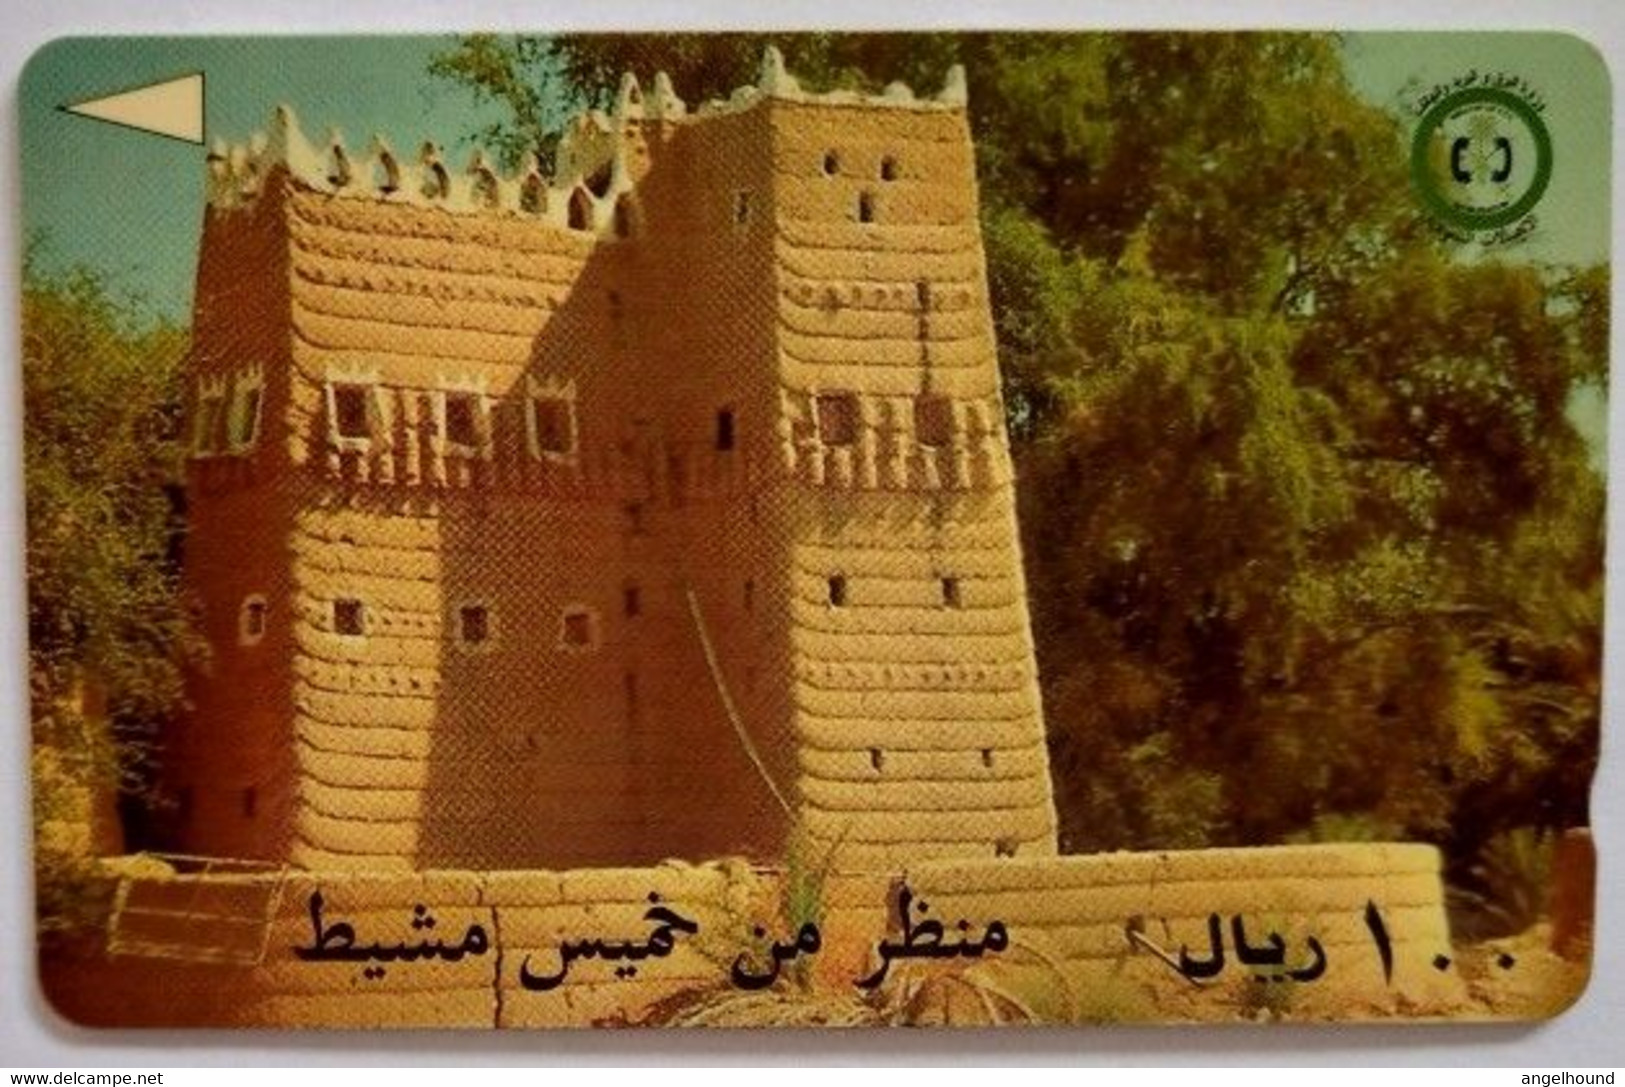 Saudi Arabia  SAUDF 100 Riyals  " Khamis Mushait Fort " - Saoedi-Arabië